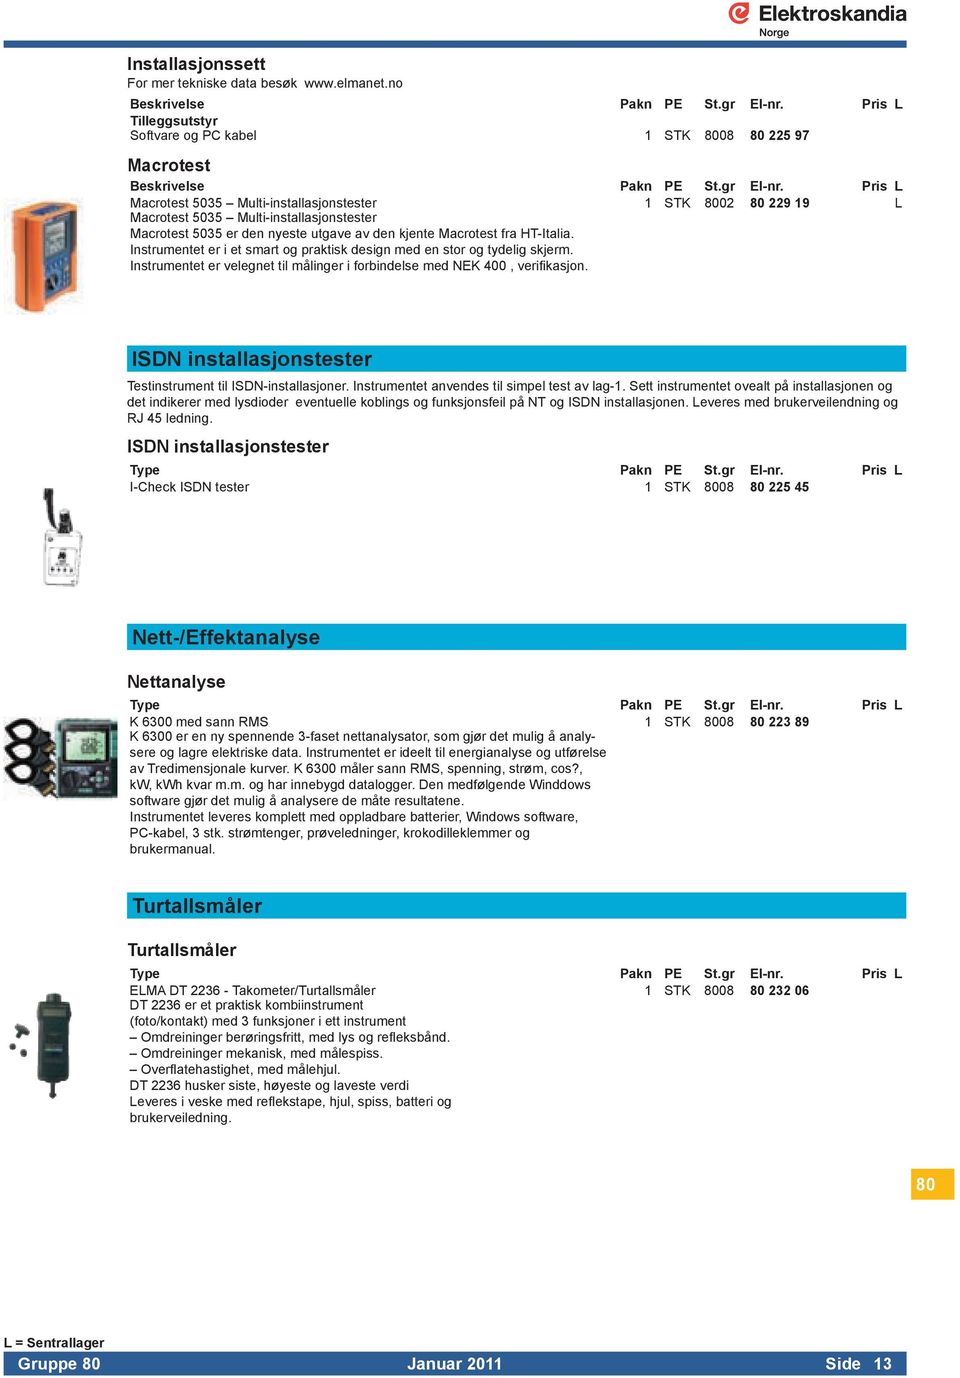 Instrumenteterietsmartogpraktiskdesignmedenstorogtydeligskjerm InstrumentetervelegnettilmålingeriforbindelsemedNEK400,verifikasjon ISDN installasjonstester